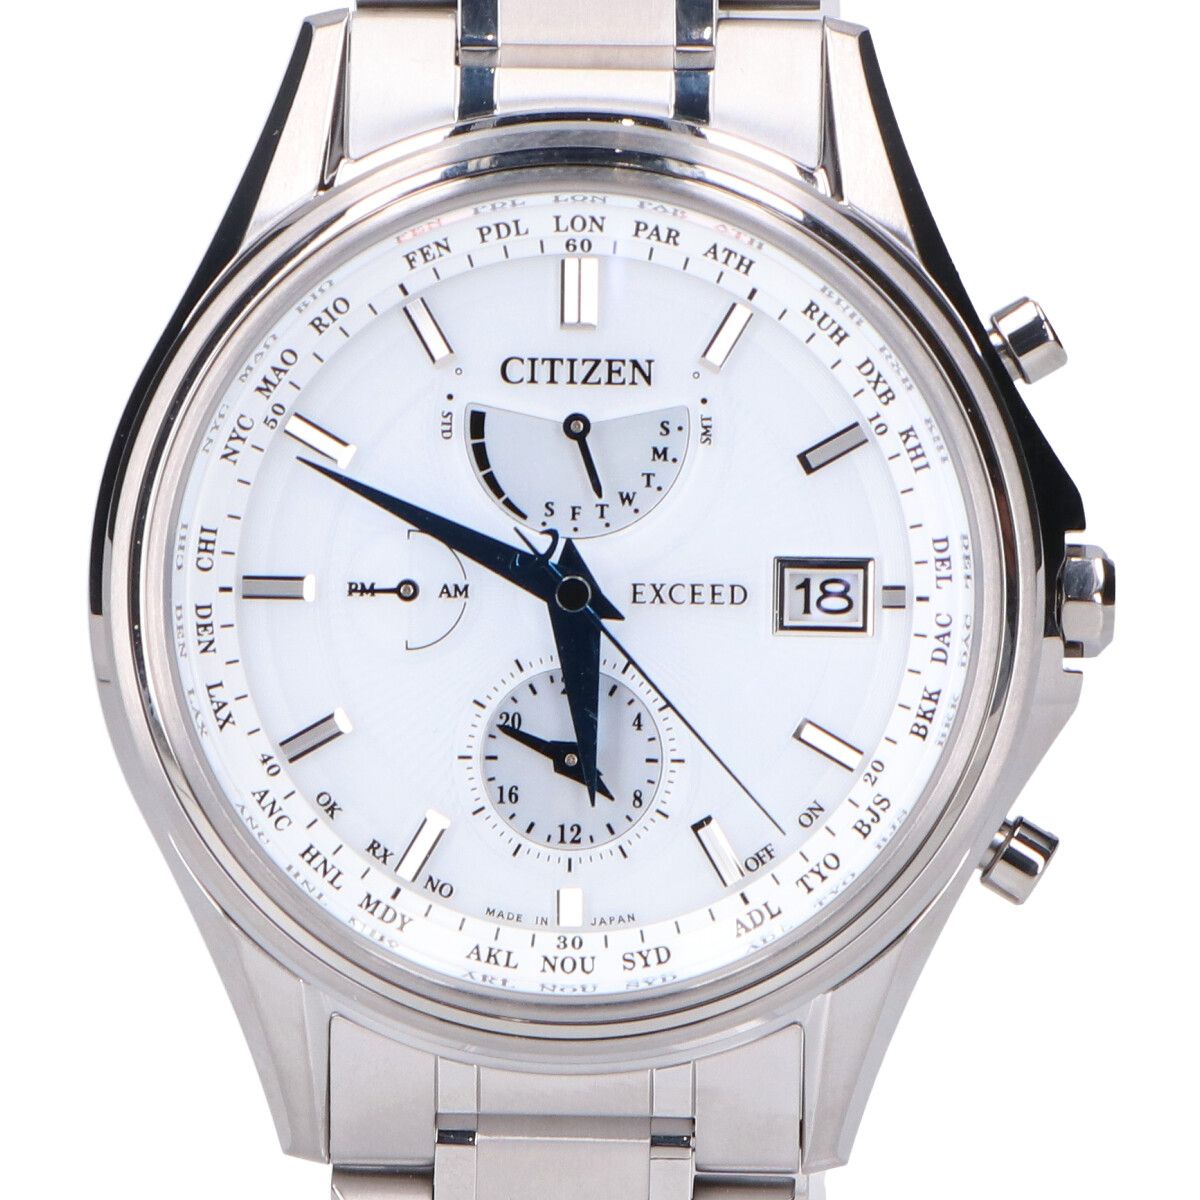 シチズン CITIZEN 腕時計 メンズ AT9130-69W エクシード エコ・ドライブ電波時計 45周年記念 ペアモデル EXCEED エコ・ドライブ電波（H820） ホワイト/ホワイトシェルxシルバー アナログ表示